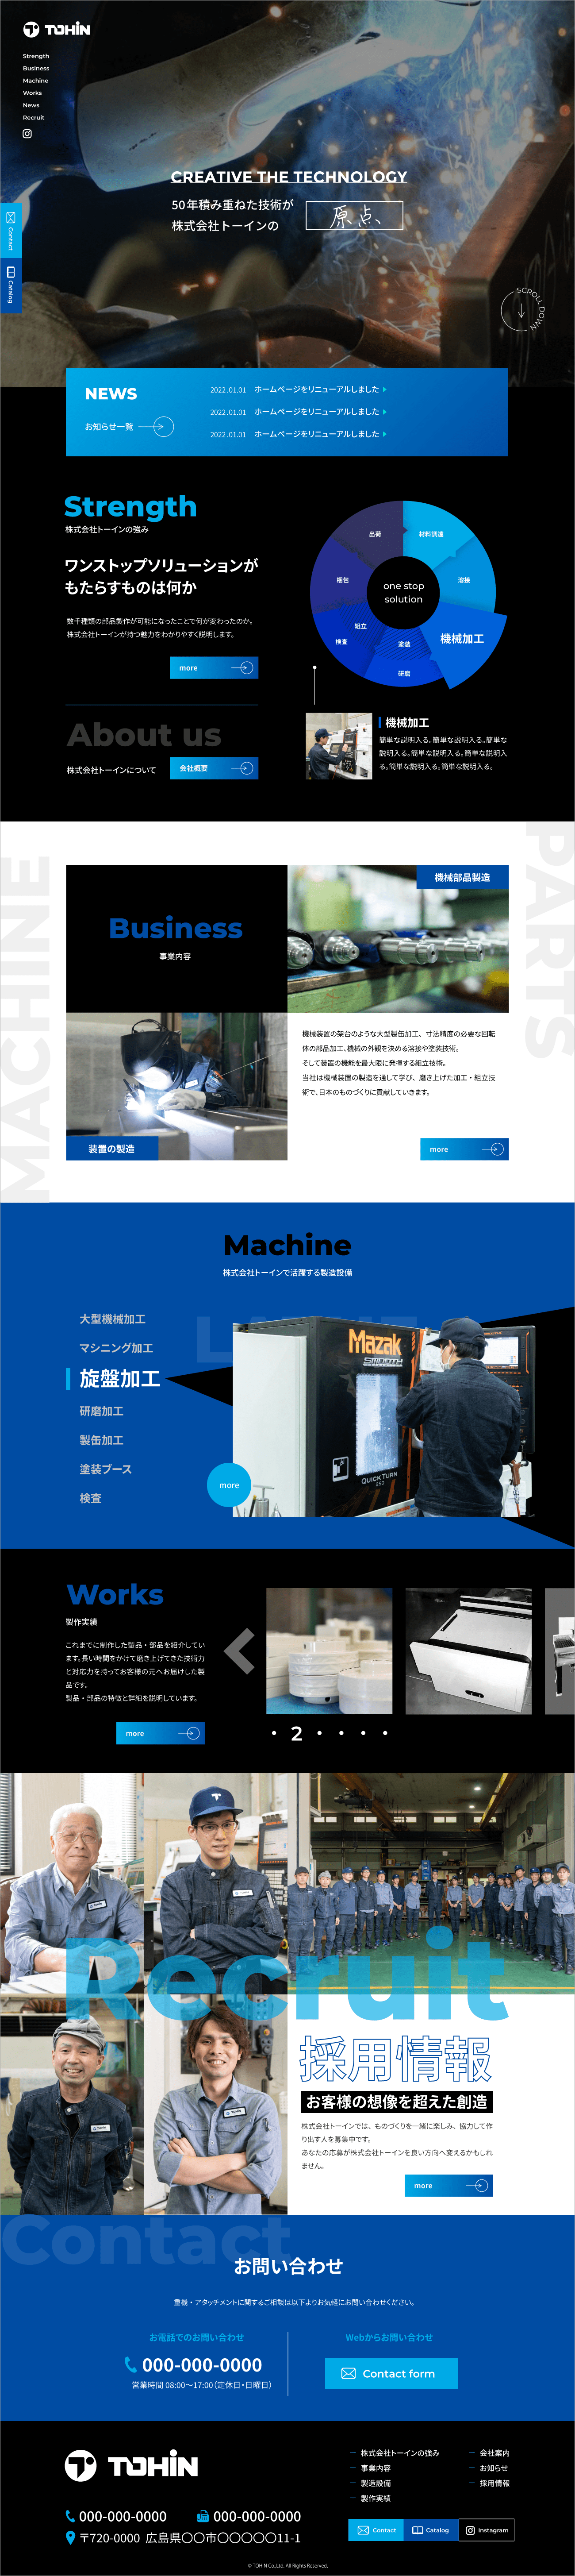 機械製造会社HPイメージ01